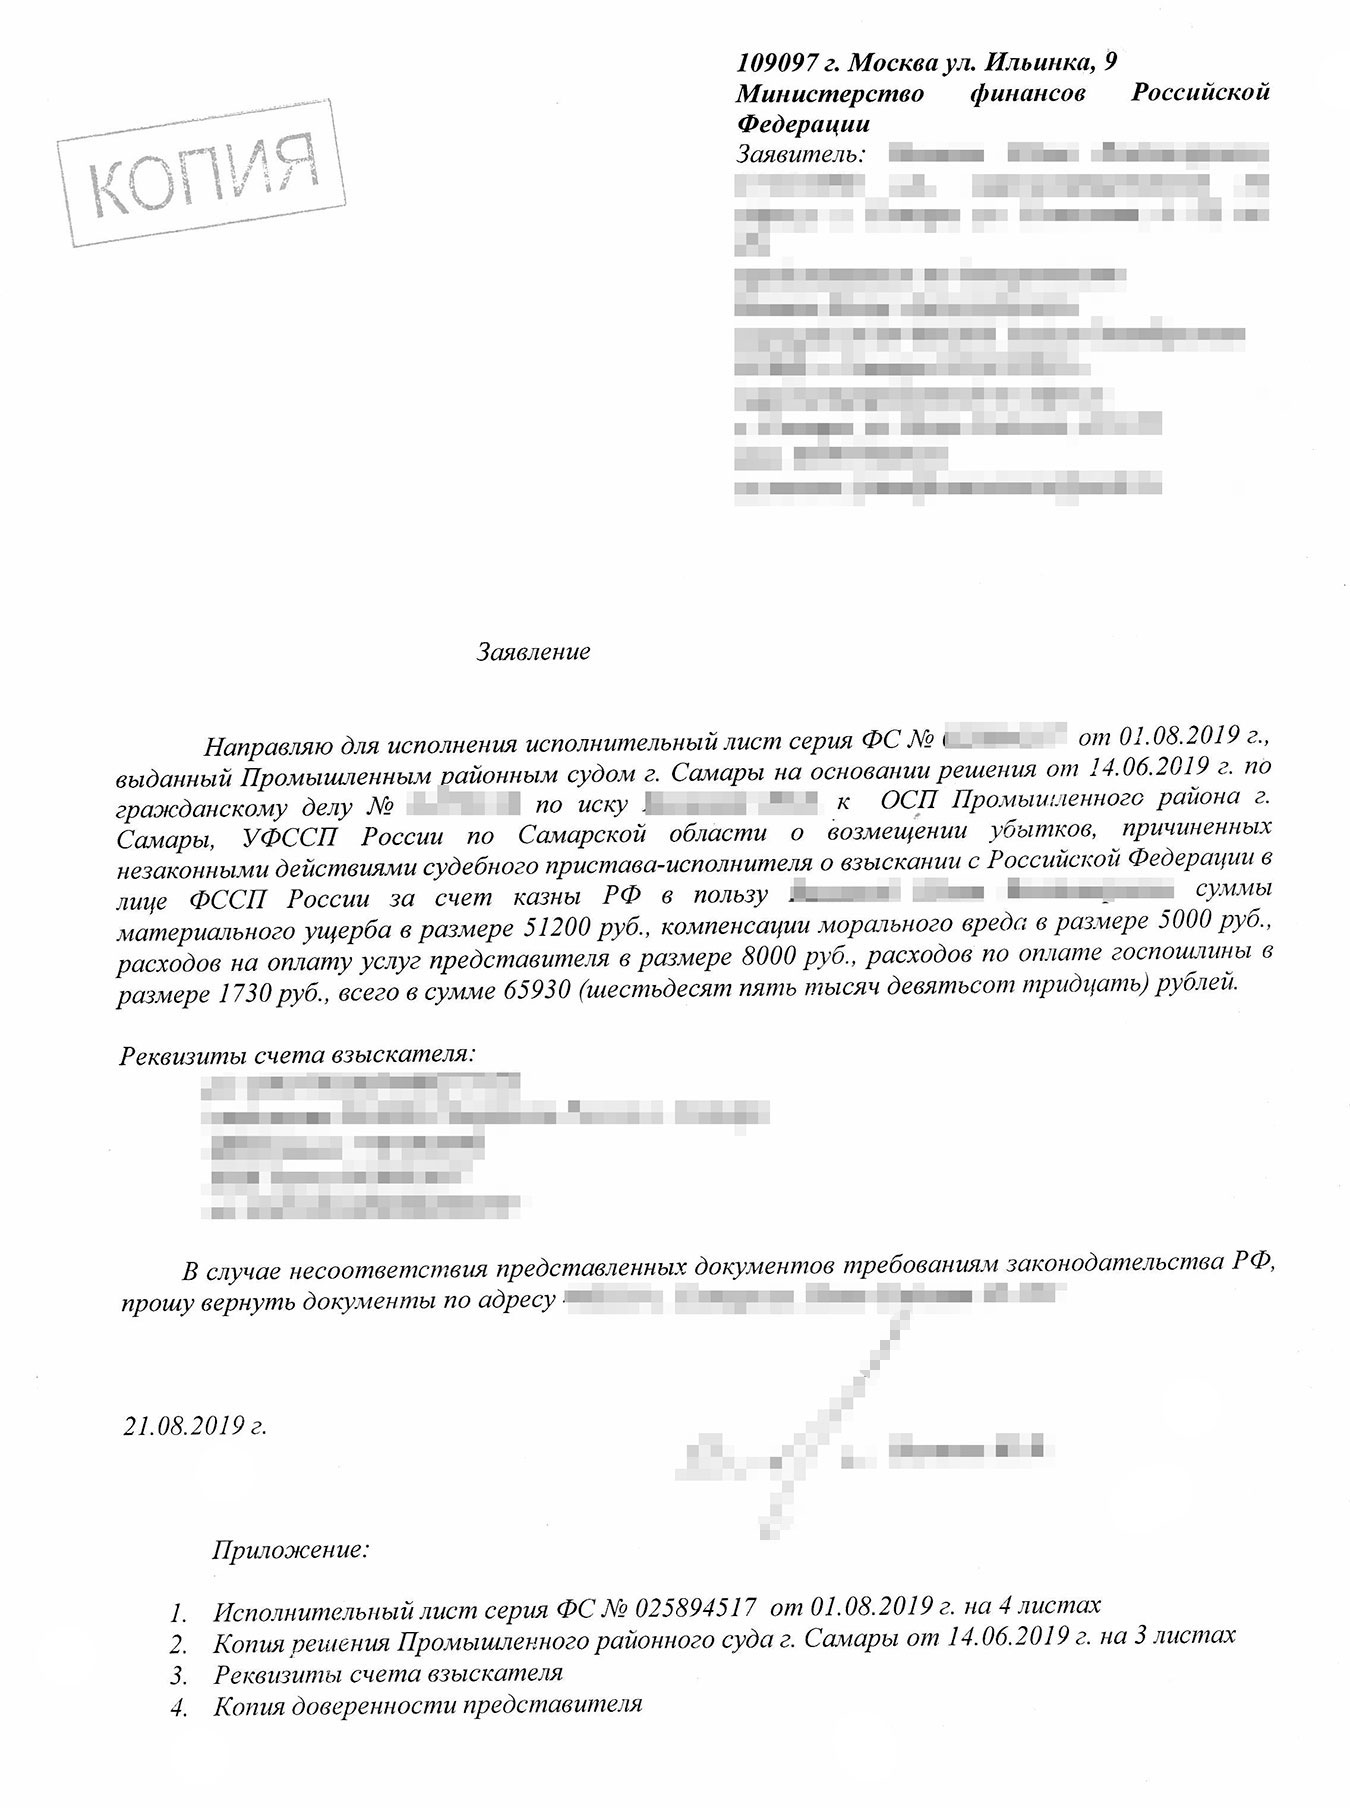 Заявление в Министерство финансов РФ лучше отправлять письмом с описью вложения и уведомлением о доставке